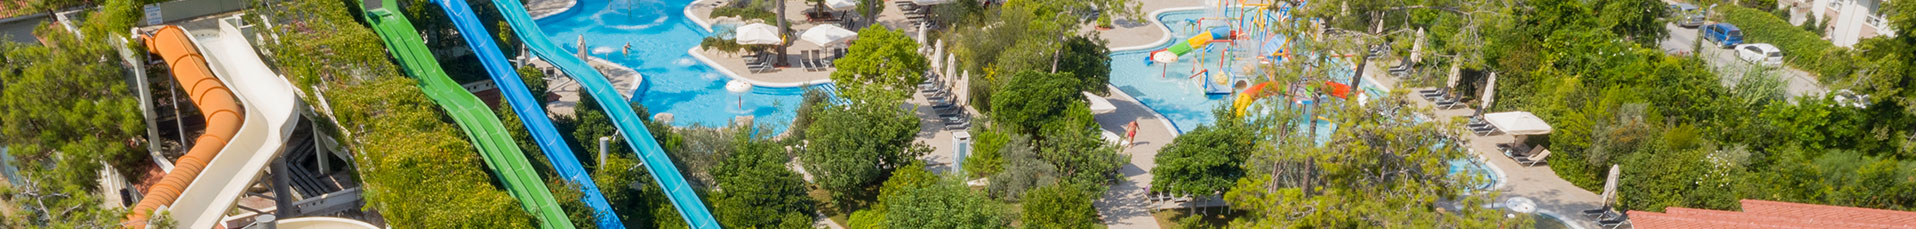 Ali Bey Resort Sorgun - Aquapark